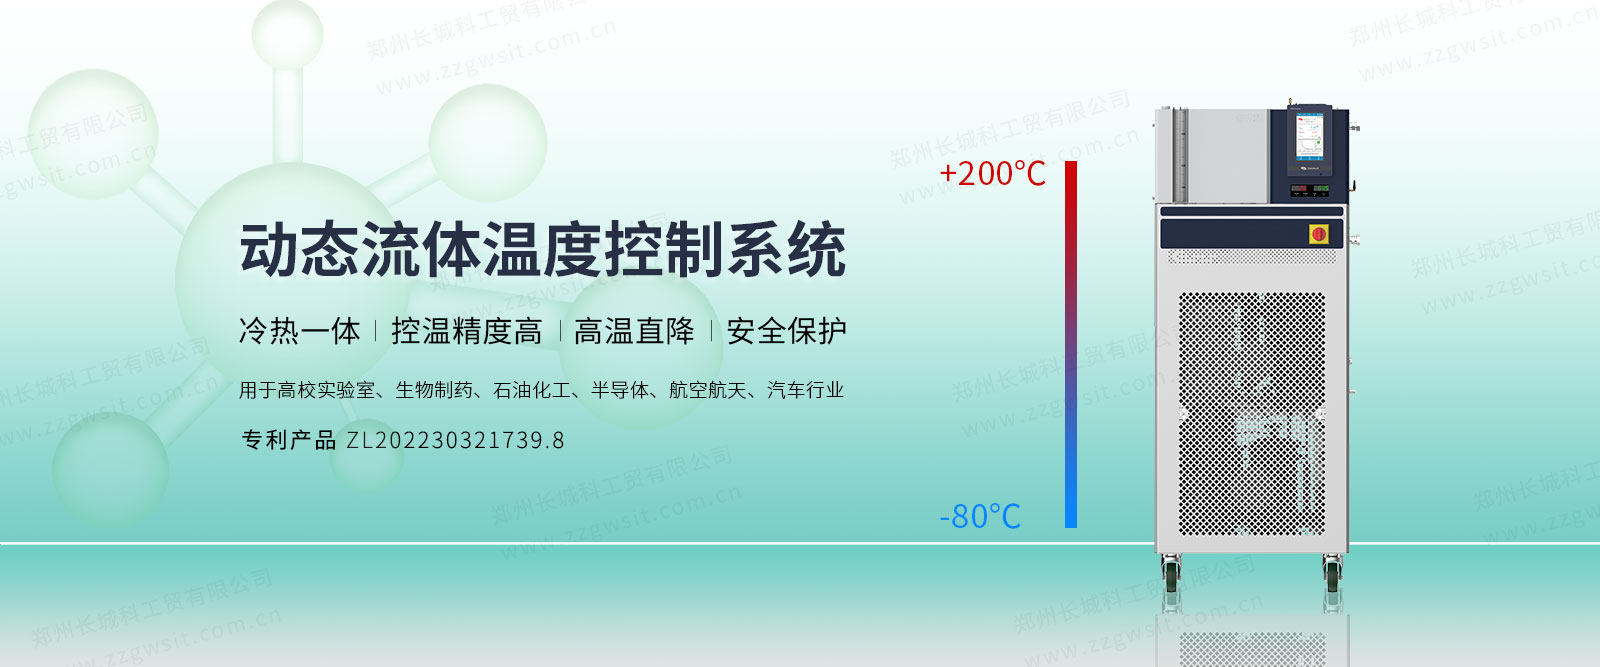 VRE动态流体温度控制系统